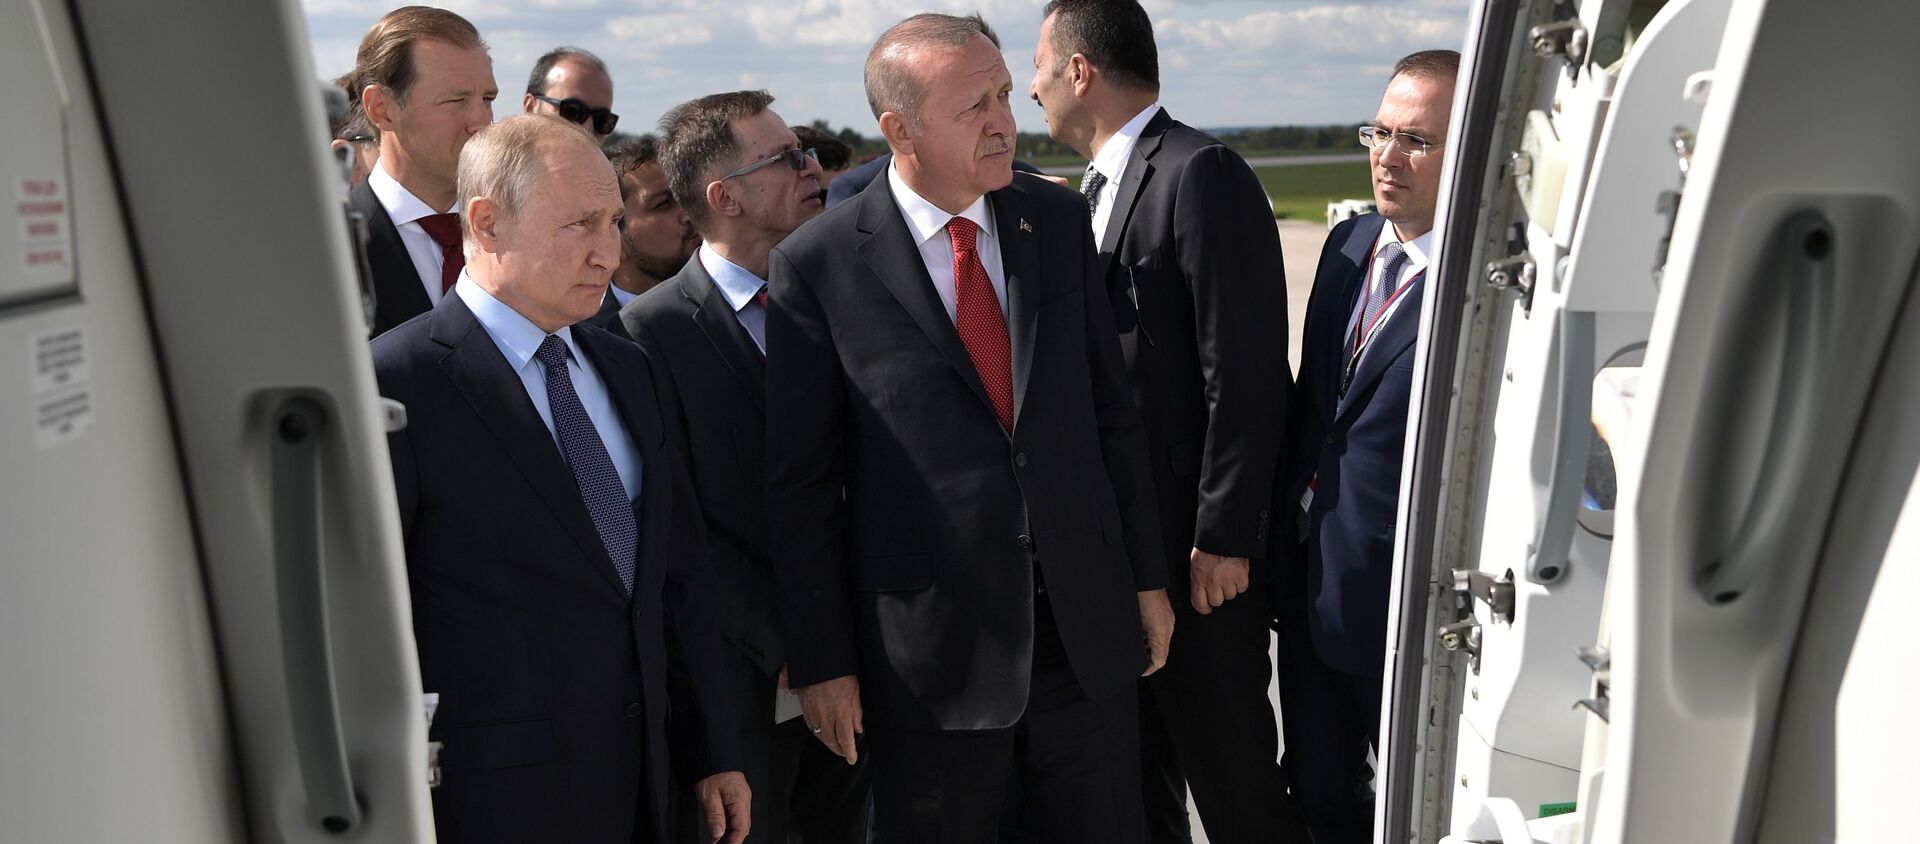 Tổng thống Nga Vladimir Putin và tổng thống Thổ Nhĩ Kỳ Recep Tayyip Erdogan trong chuyến thăm Triển lãm MAKS-2019 - Sputnik Việt Nam, 1920, 31.08.2019